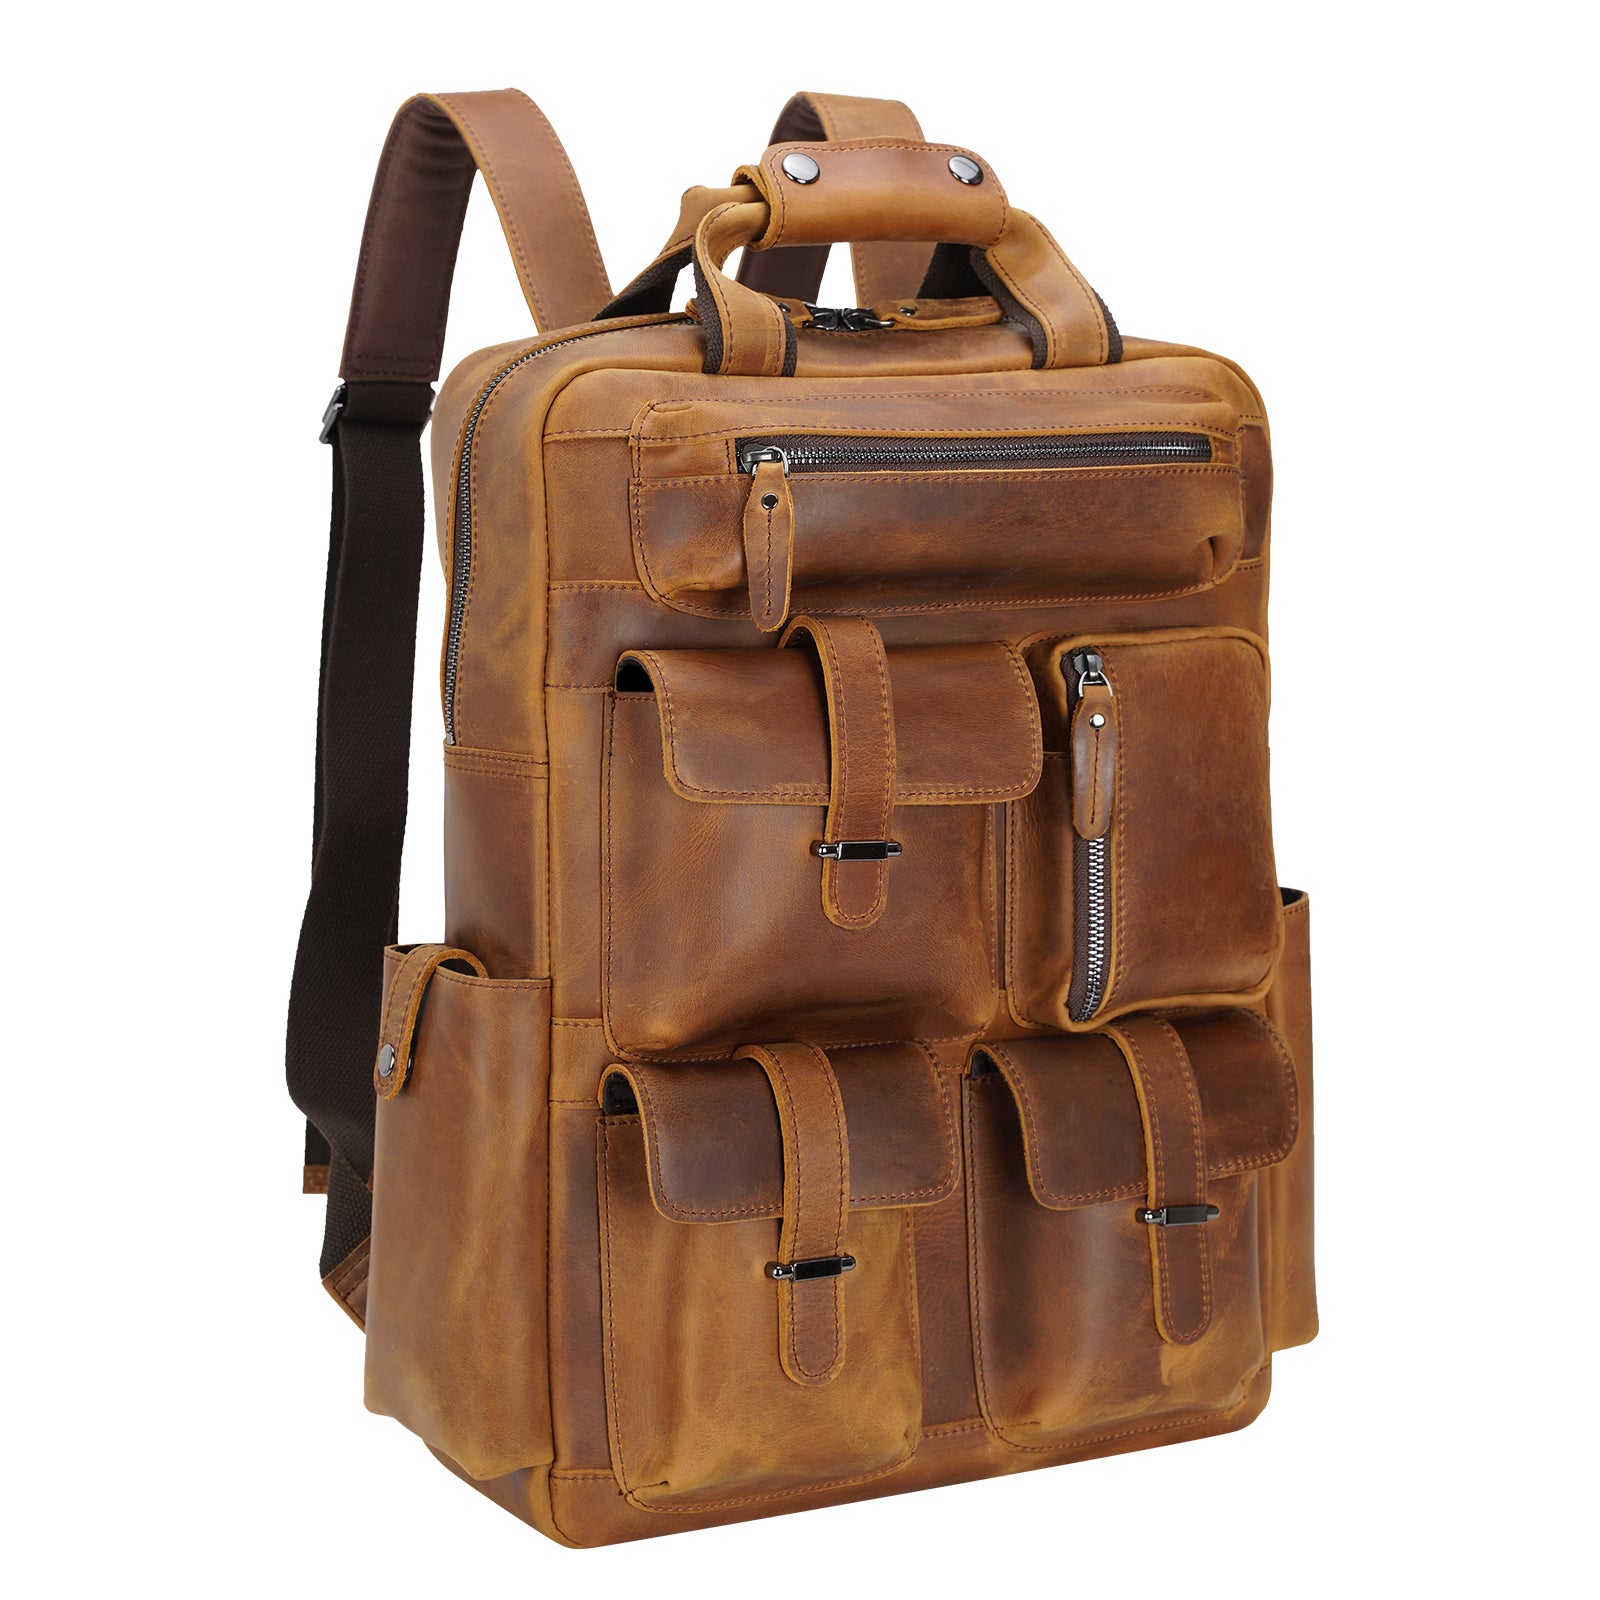 Polare Real Leather Vintage Laptop Backpack Shoulder Bag (Light Brown)